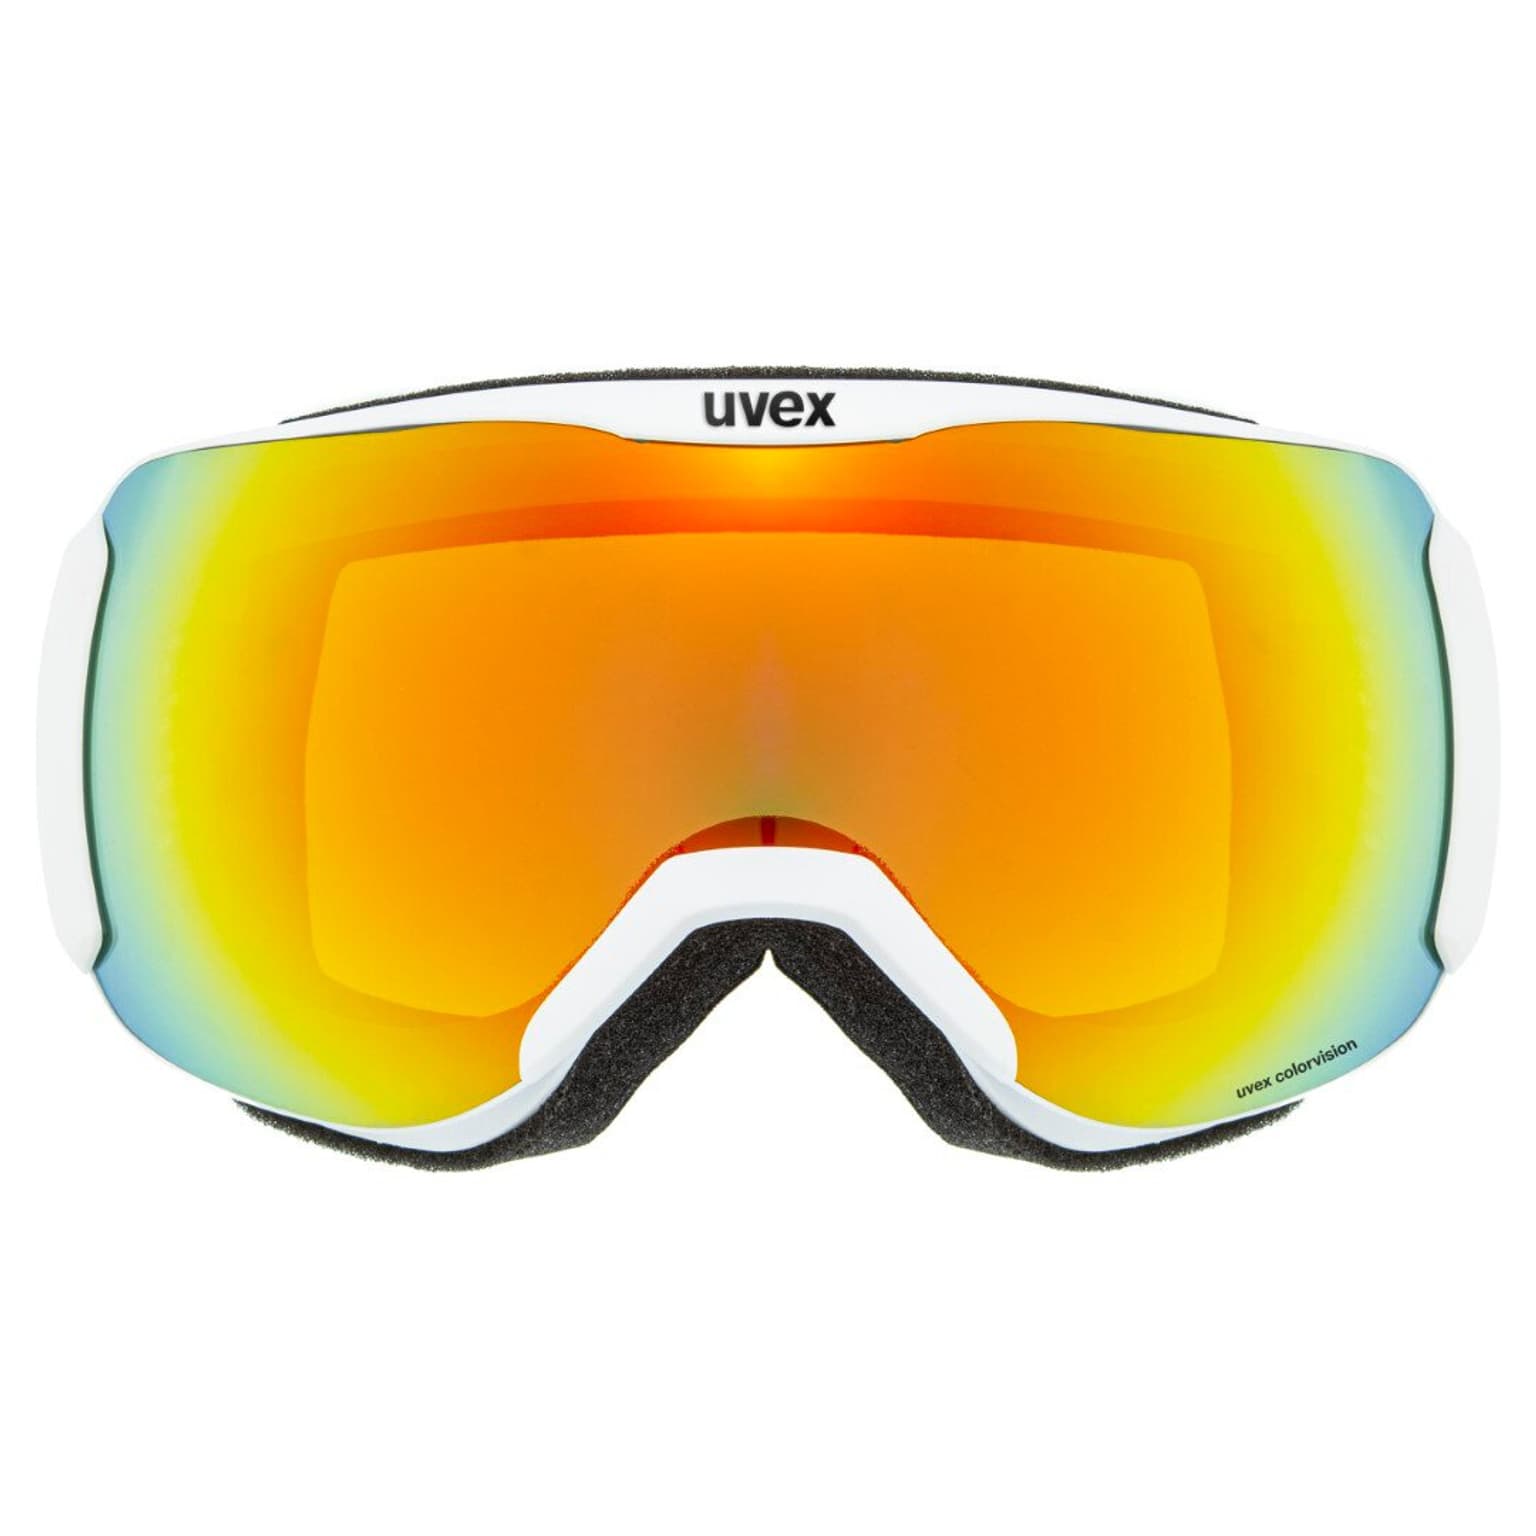 Uvex Uvex Downhill Masque de ski jaune-neon 3